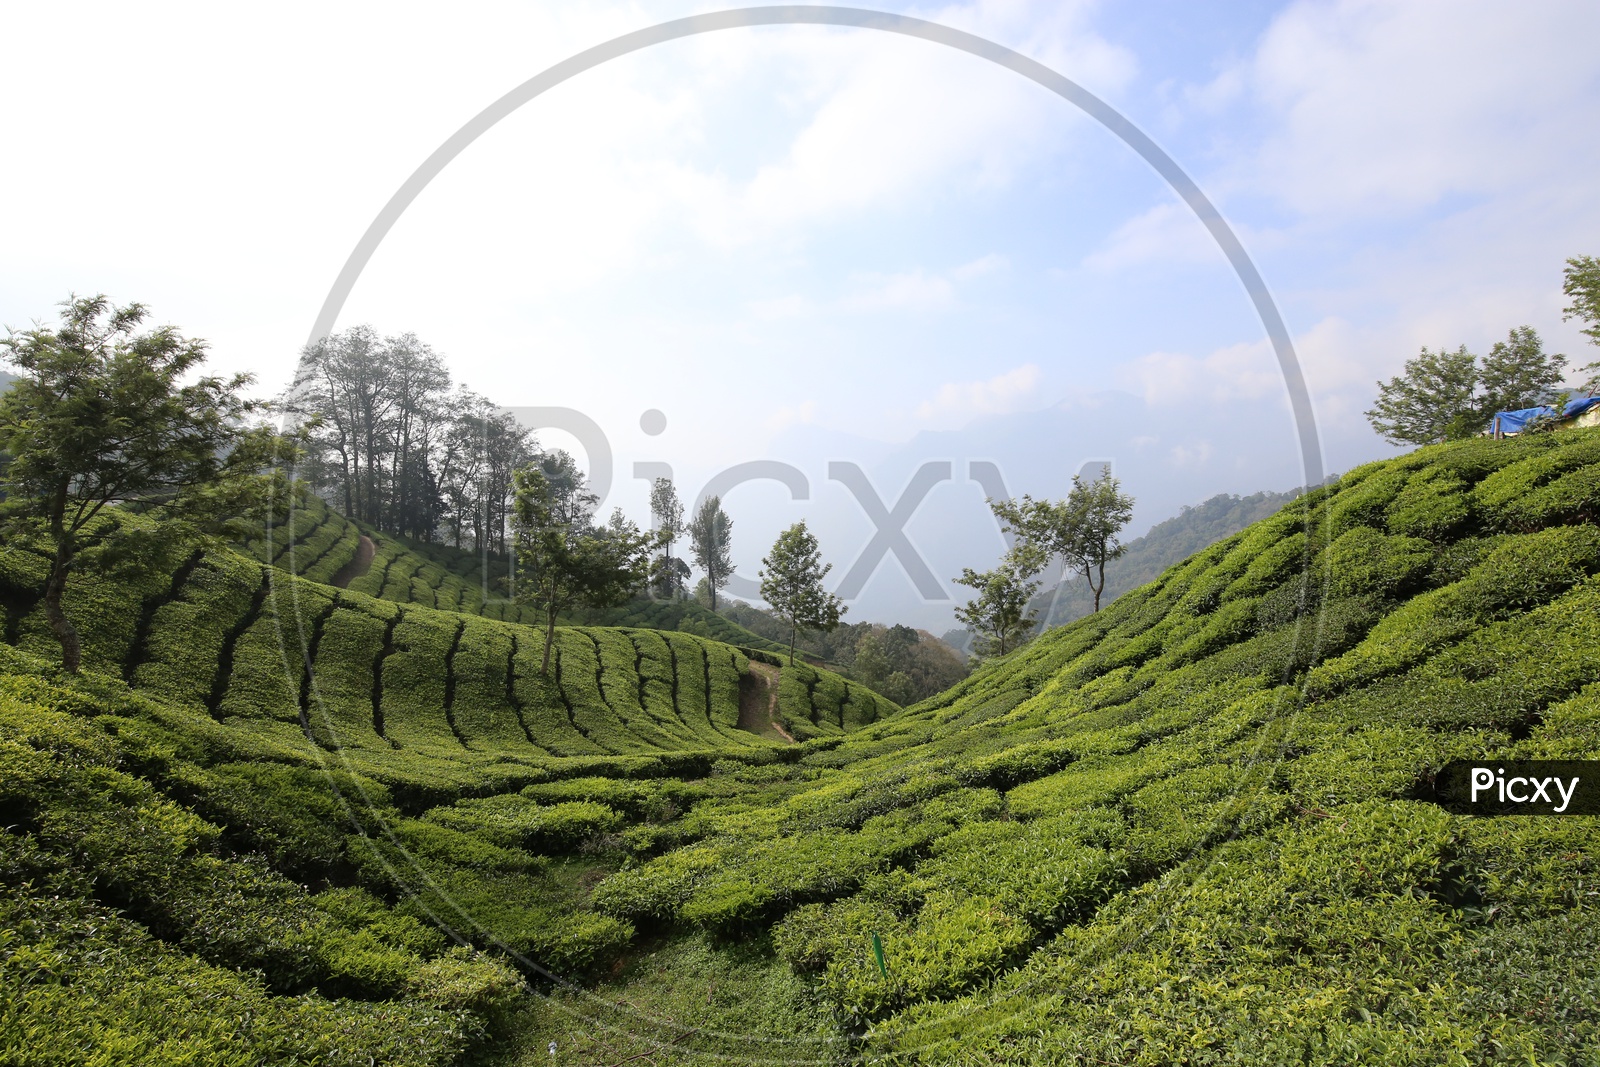 Munnar Tea Plantations